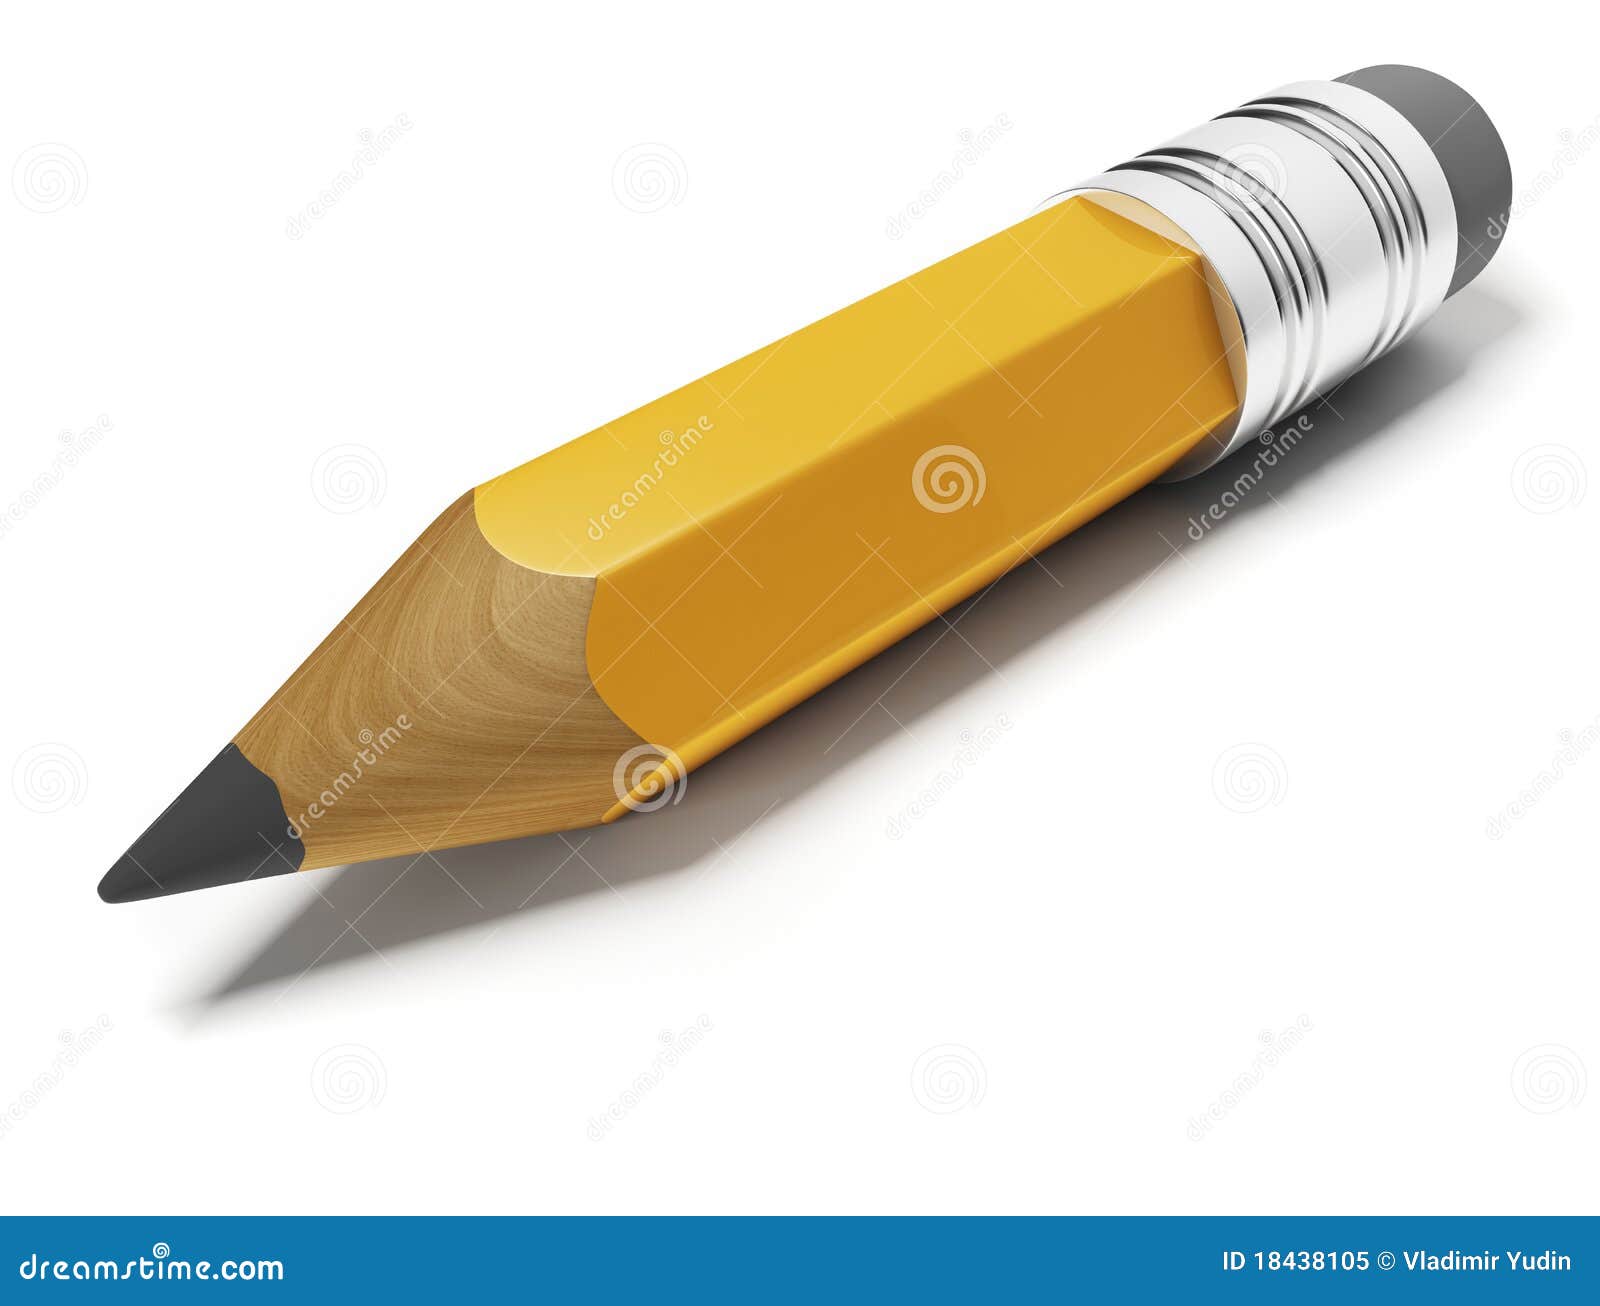 small pencil